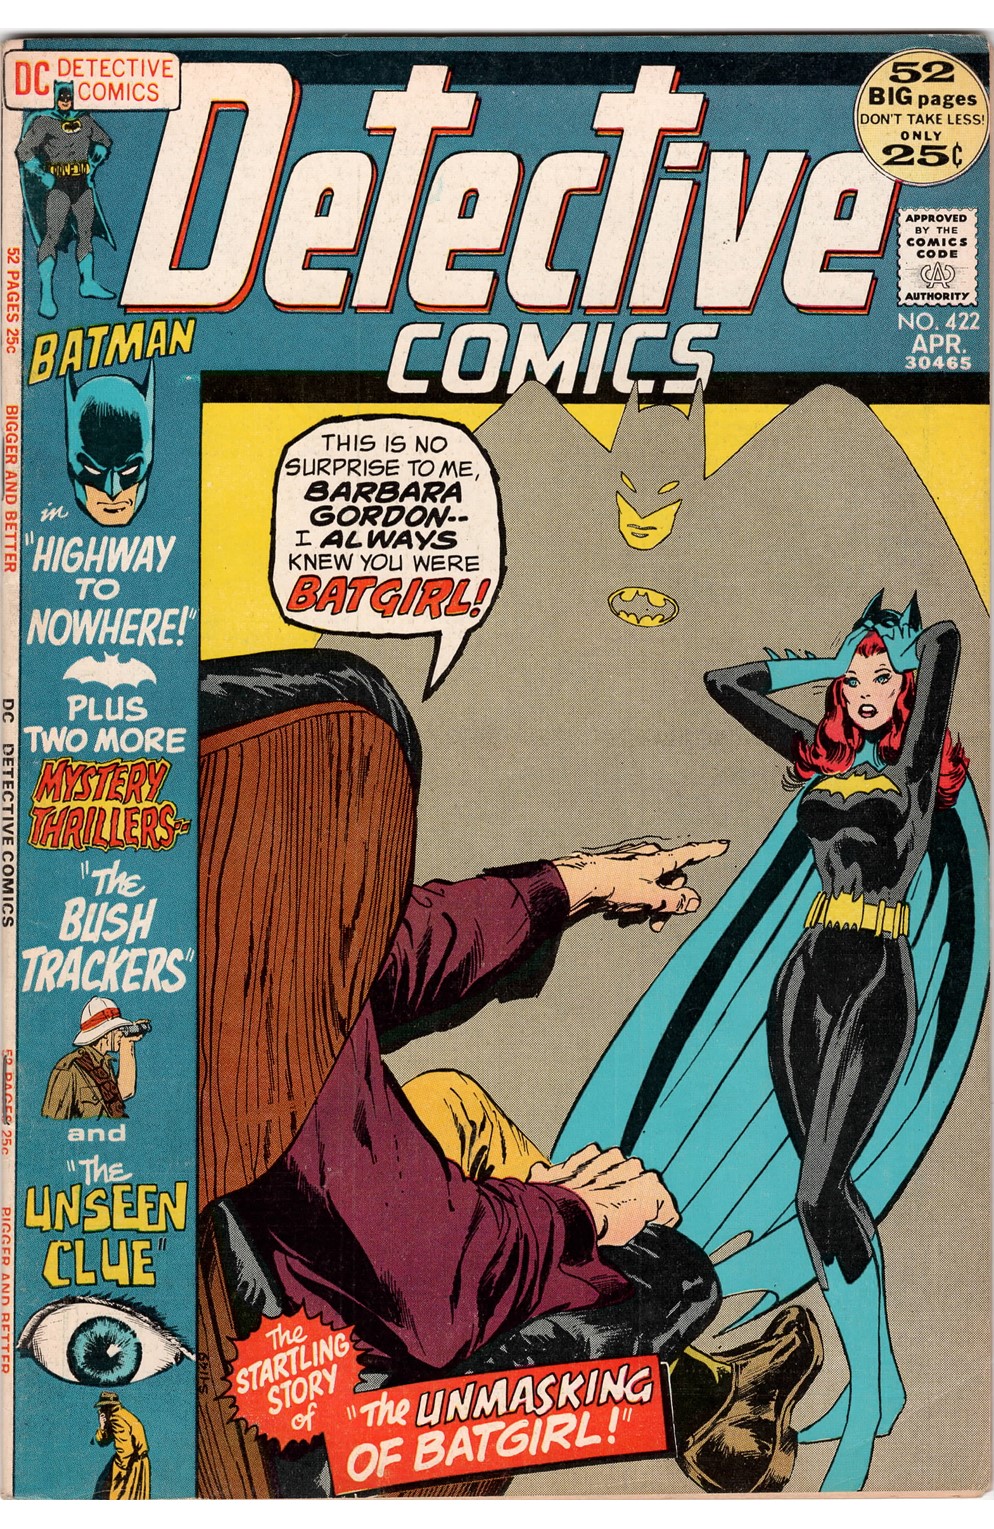 Detective Comics #0422